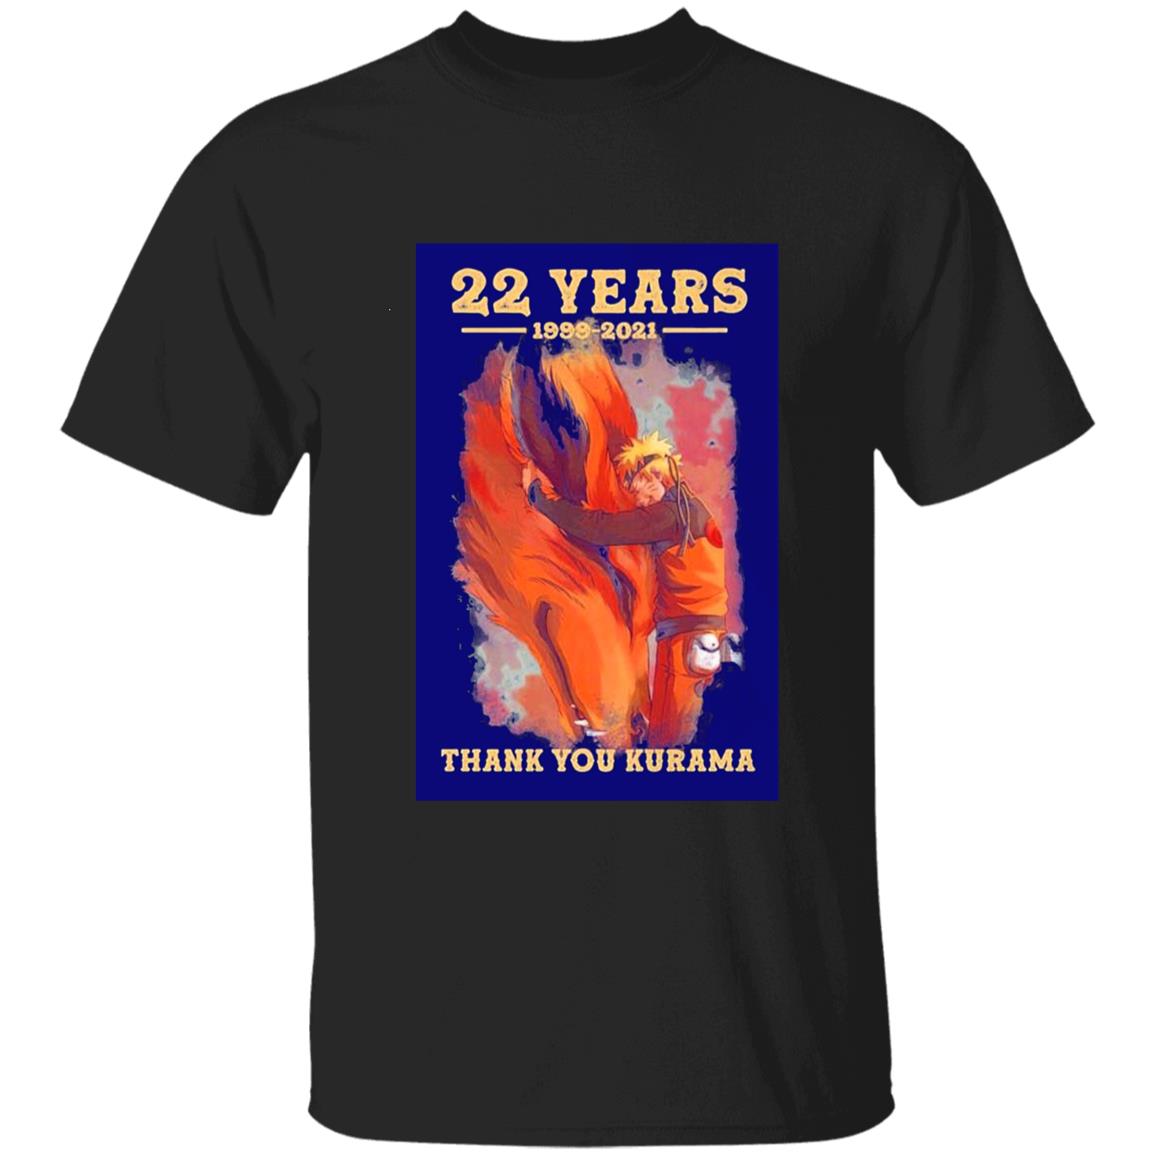 Naruto And Kurama 22 Years 1999-2021 Thank you Kurama Unisex T-Shirt, Sweatshirt, Hoodie